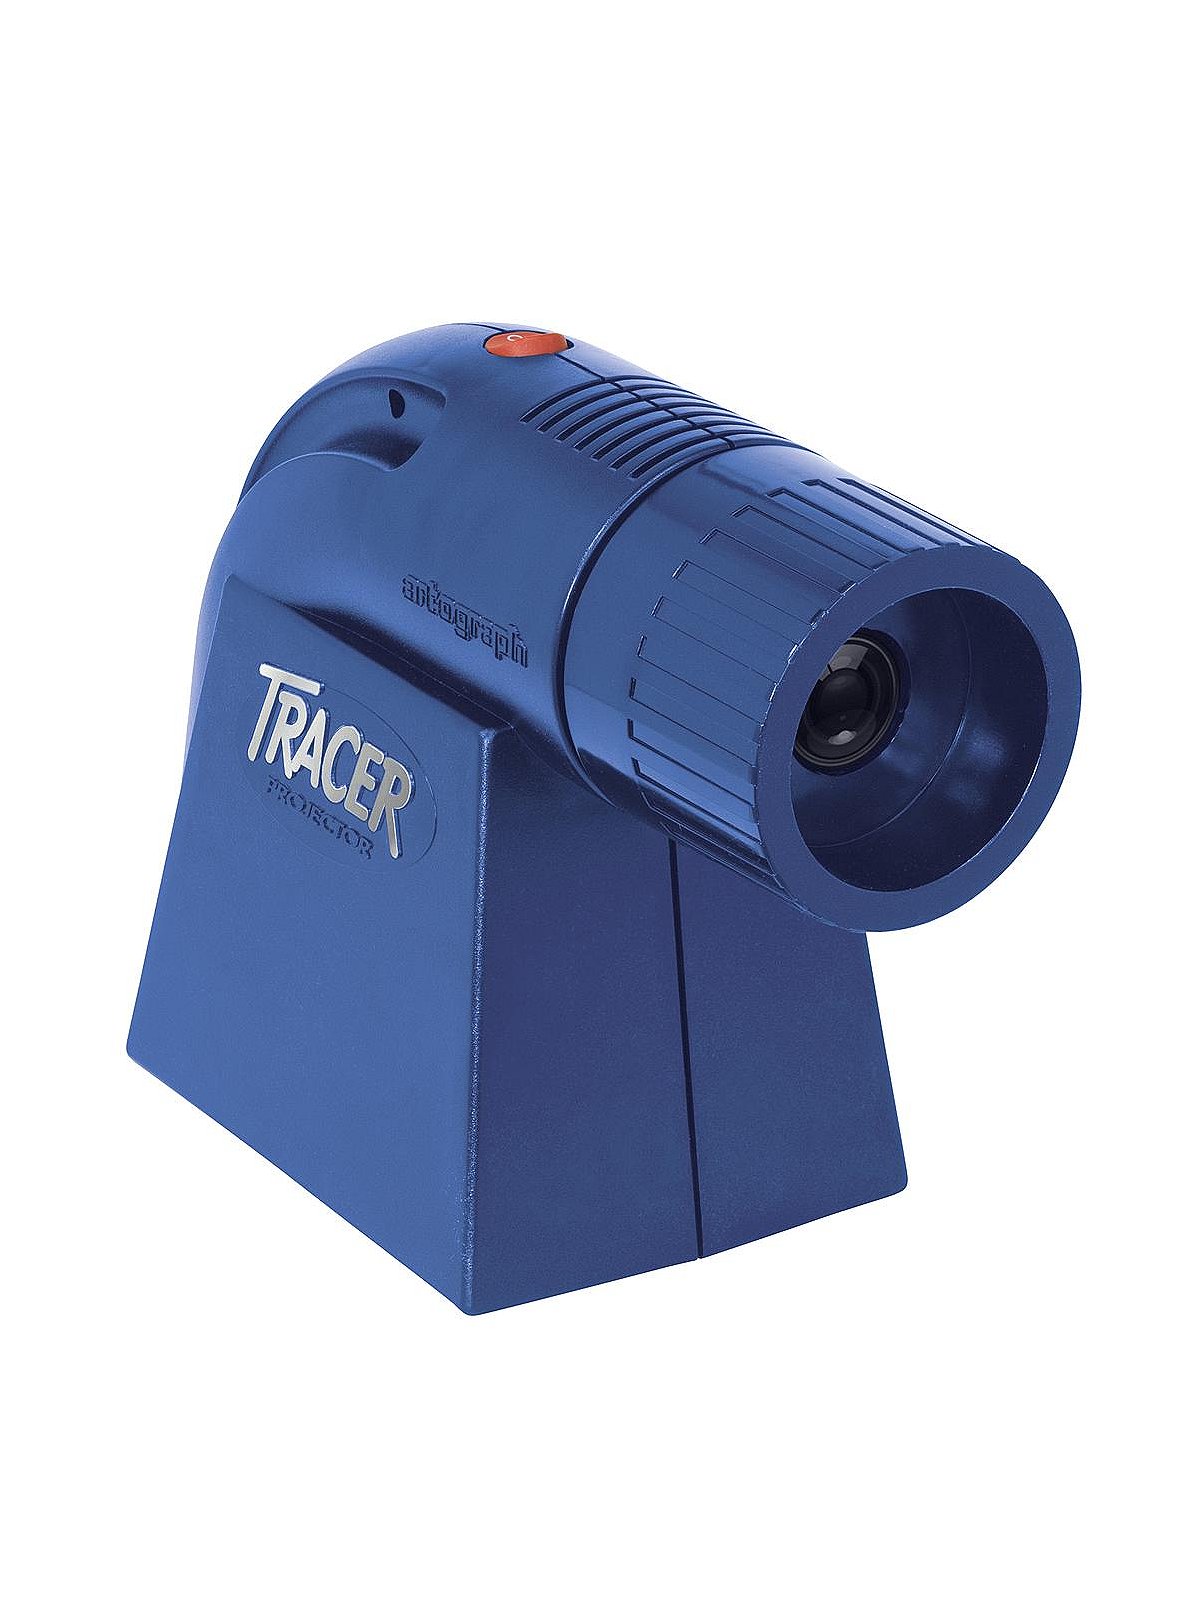 EZ Tracer Projector - Artograph